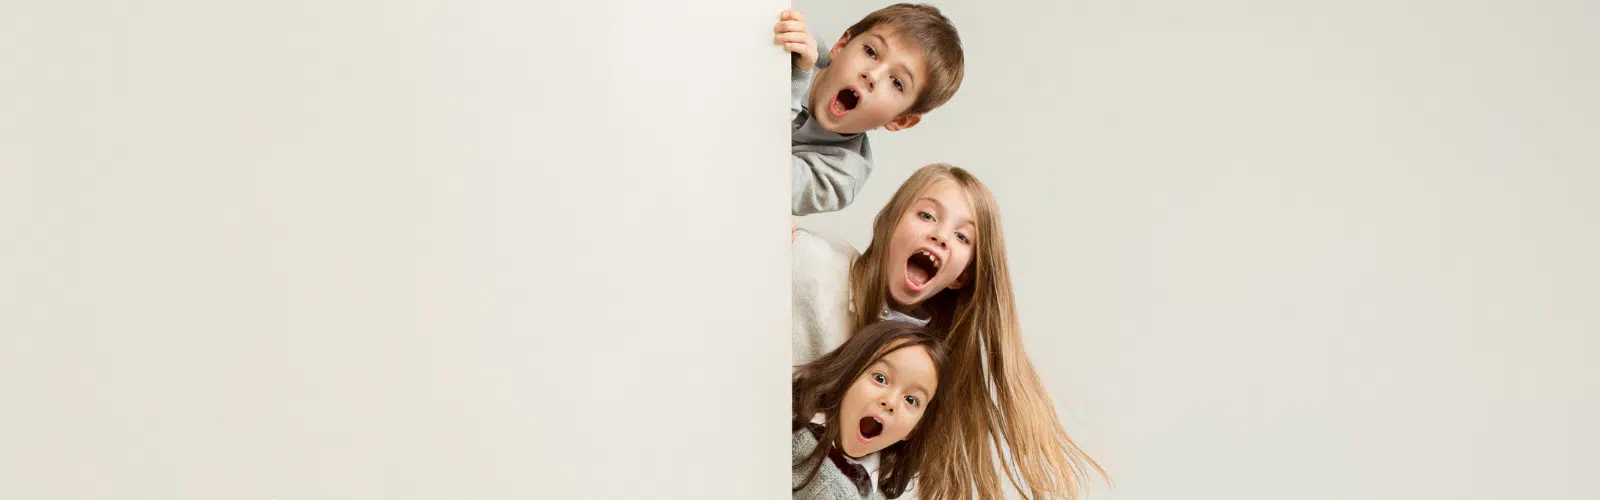 Babysitting: what is shared custody?